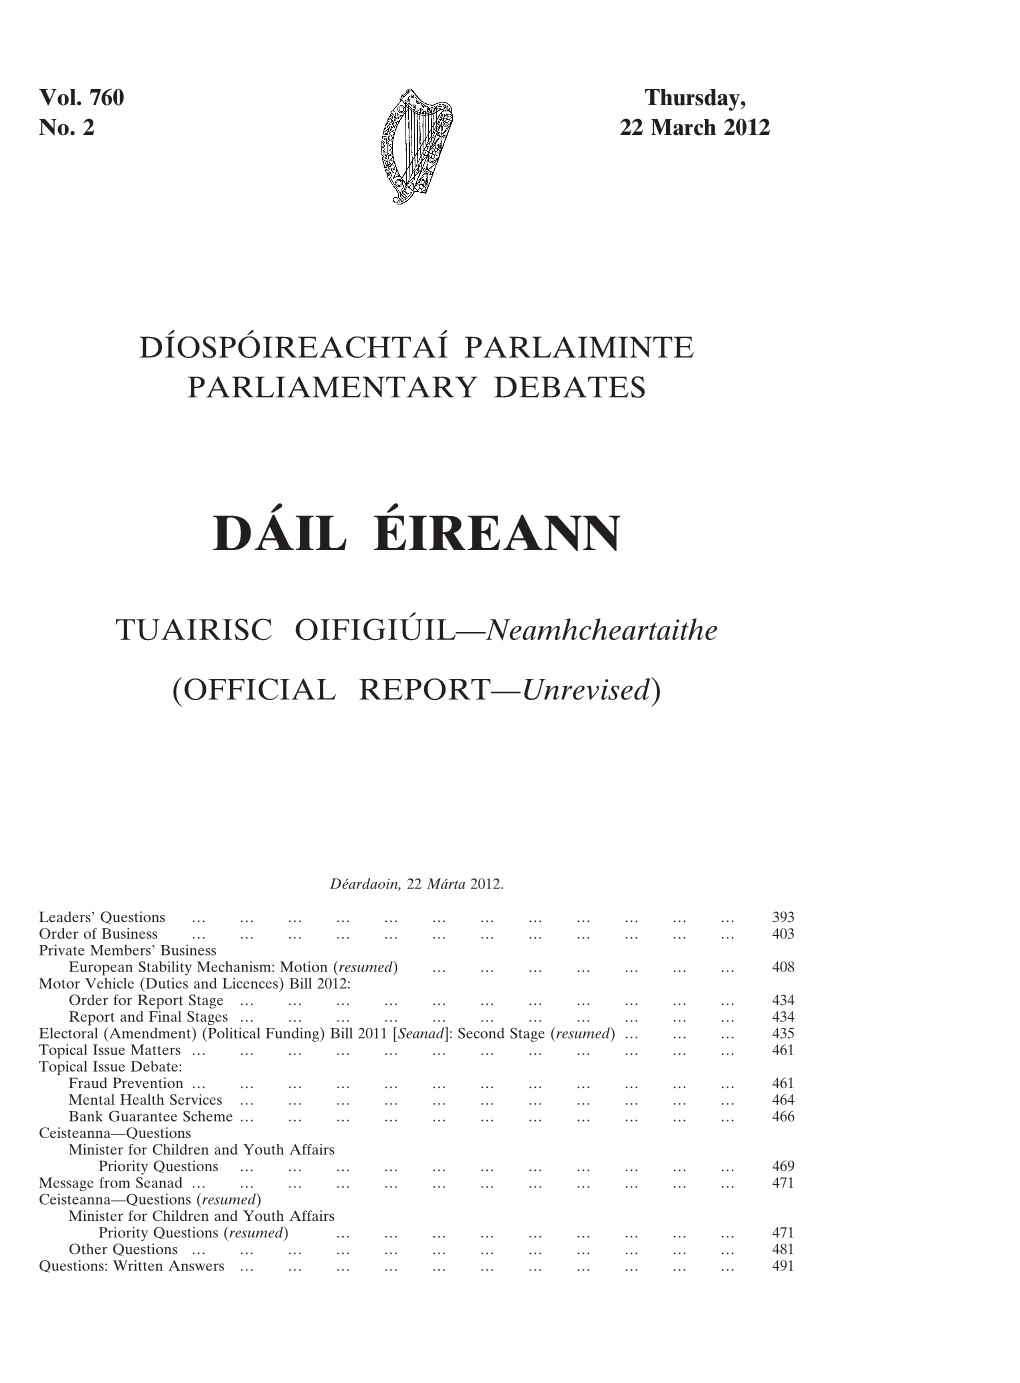 Dáil Éireann